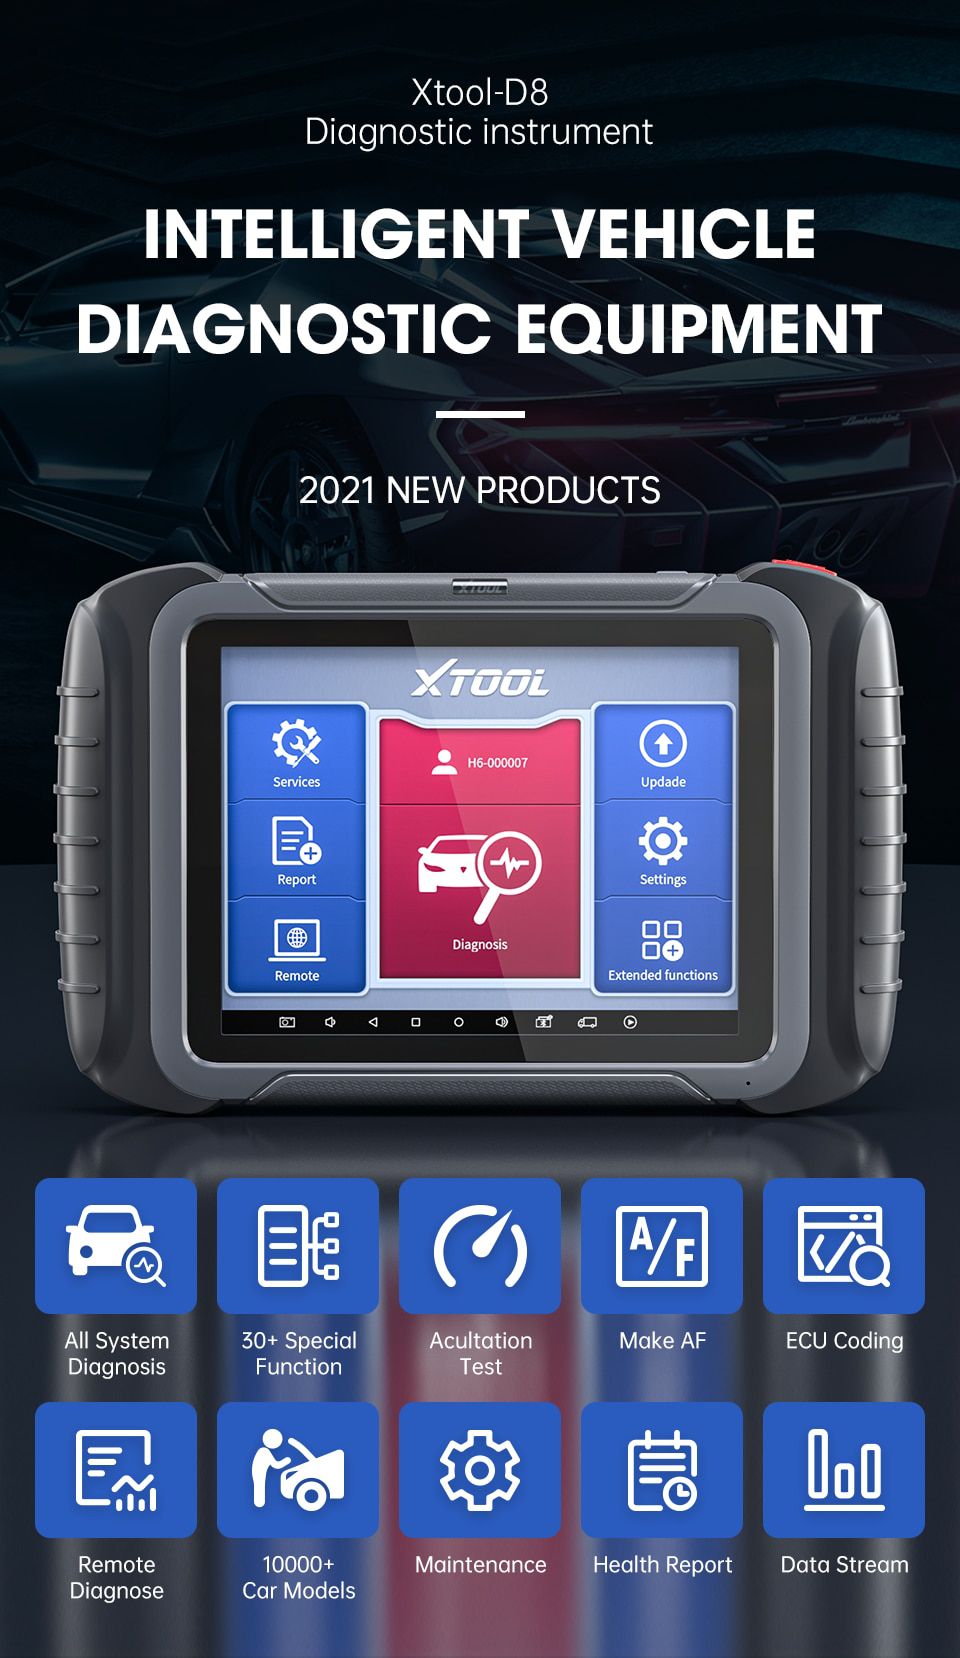 XTOOL D8 OBD2 Professional Automotive Diagnostic Tool